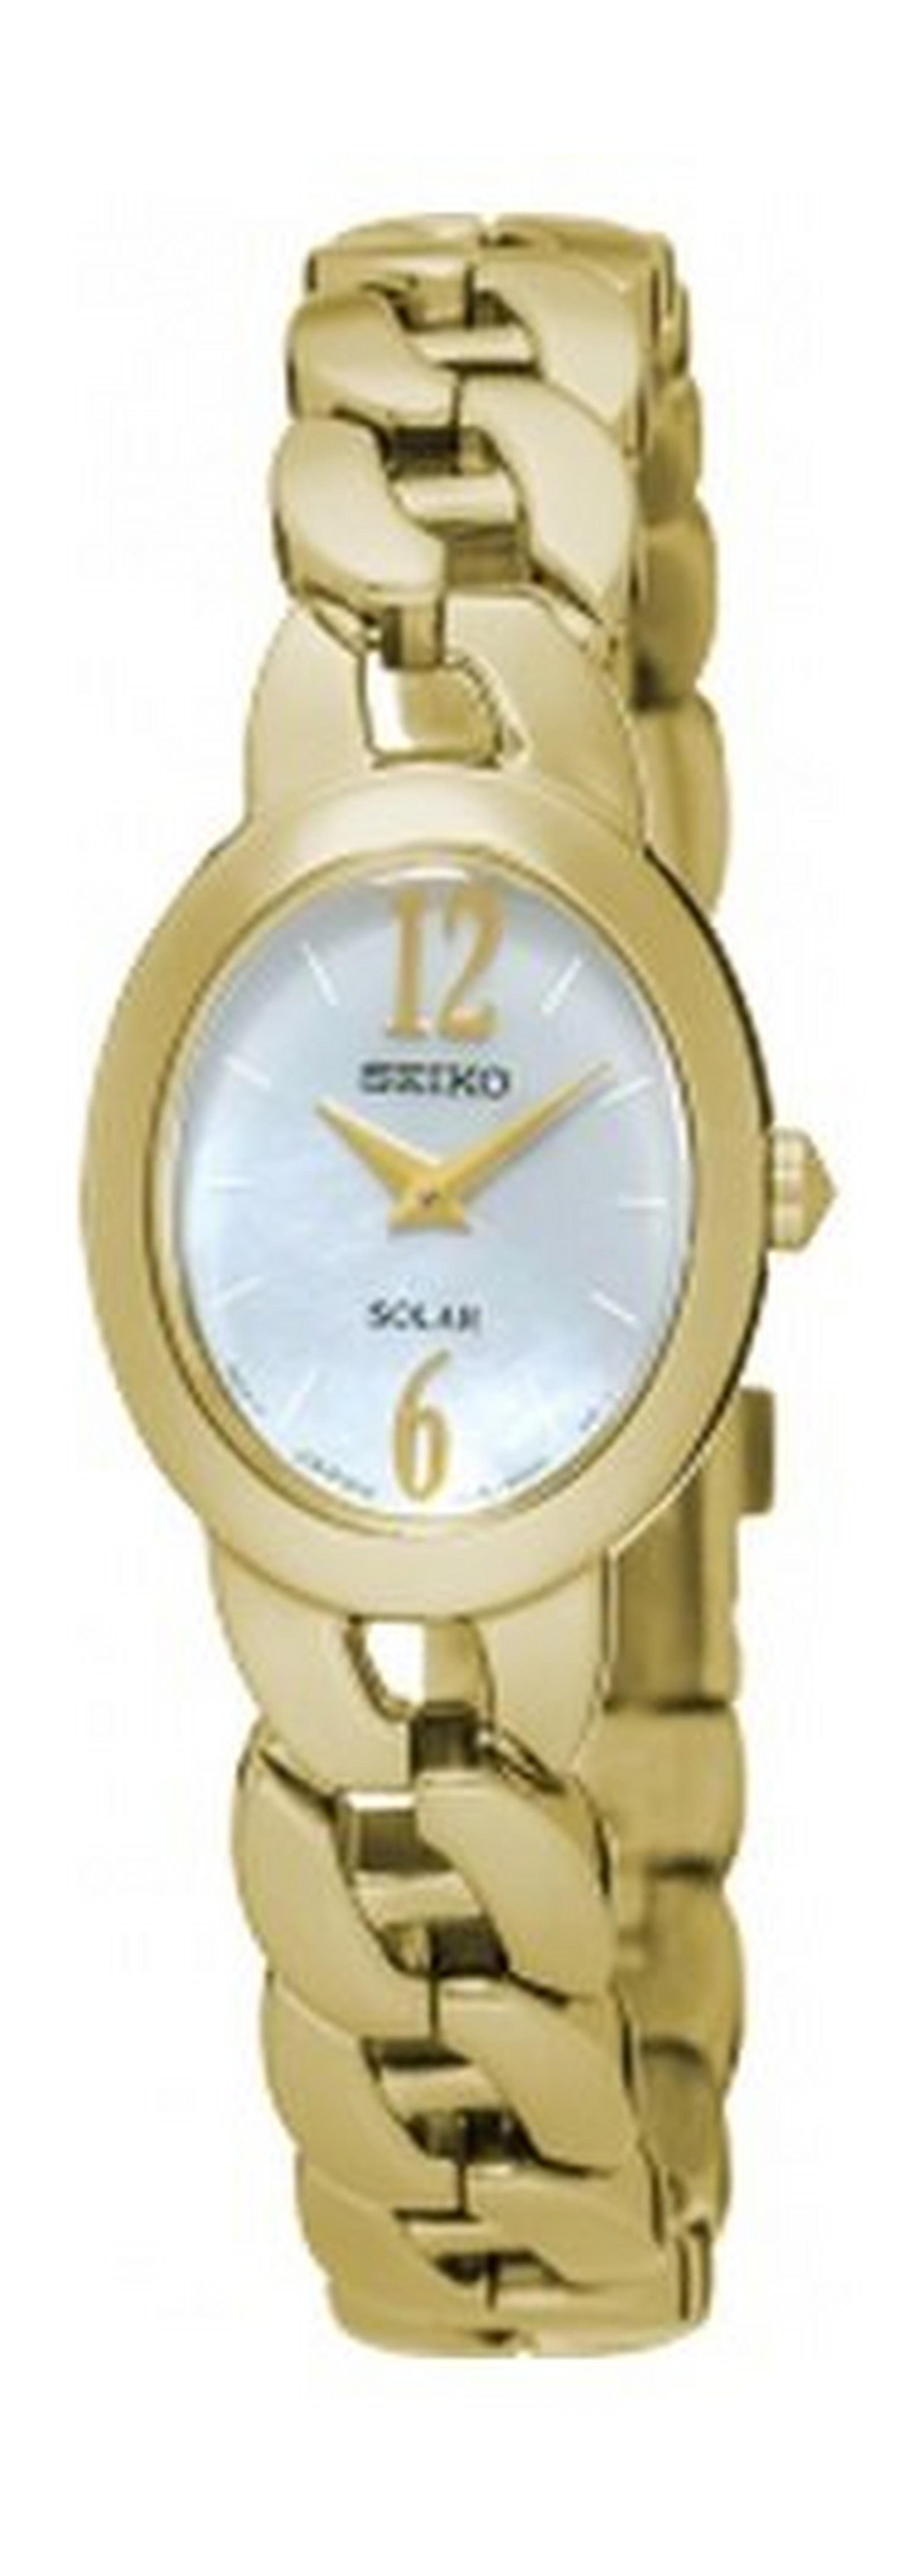 Seiko UP322P Ladies Analog Watch - Metal Strap – Gold